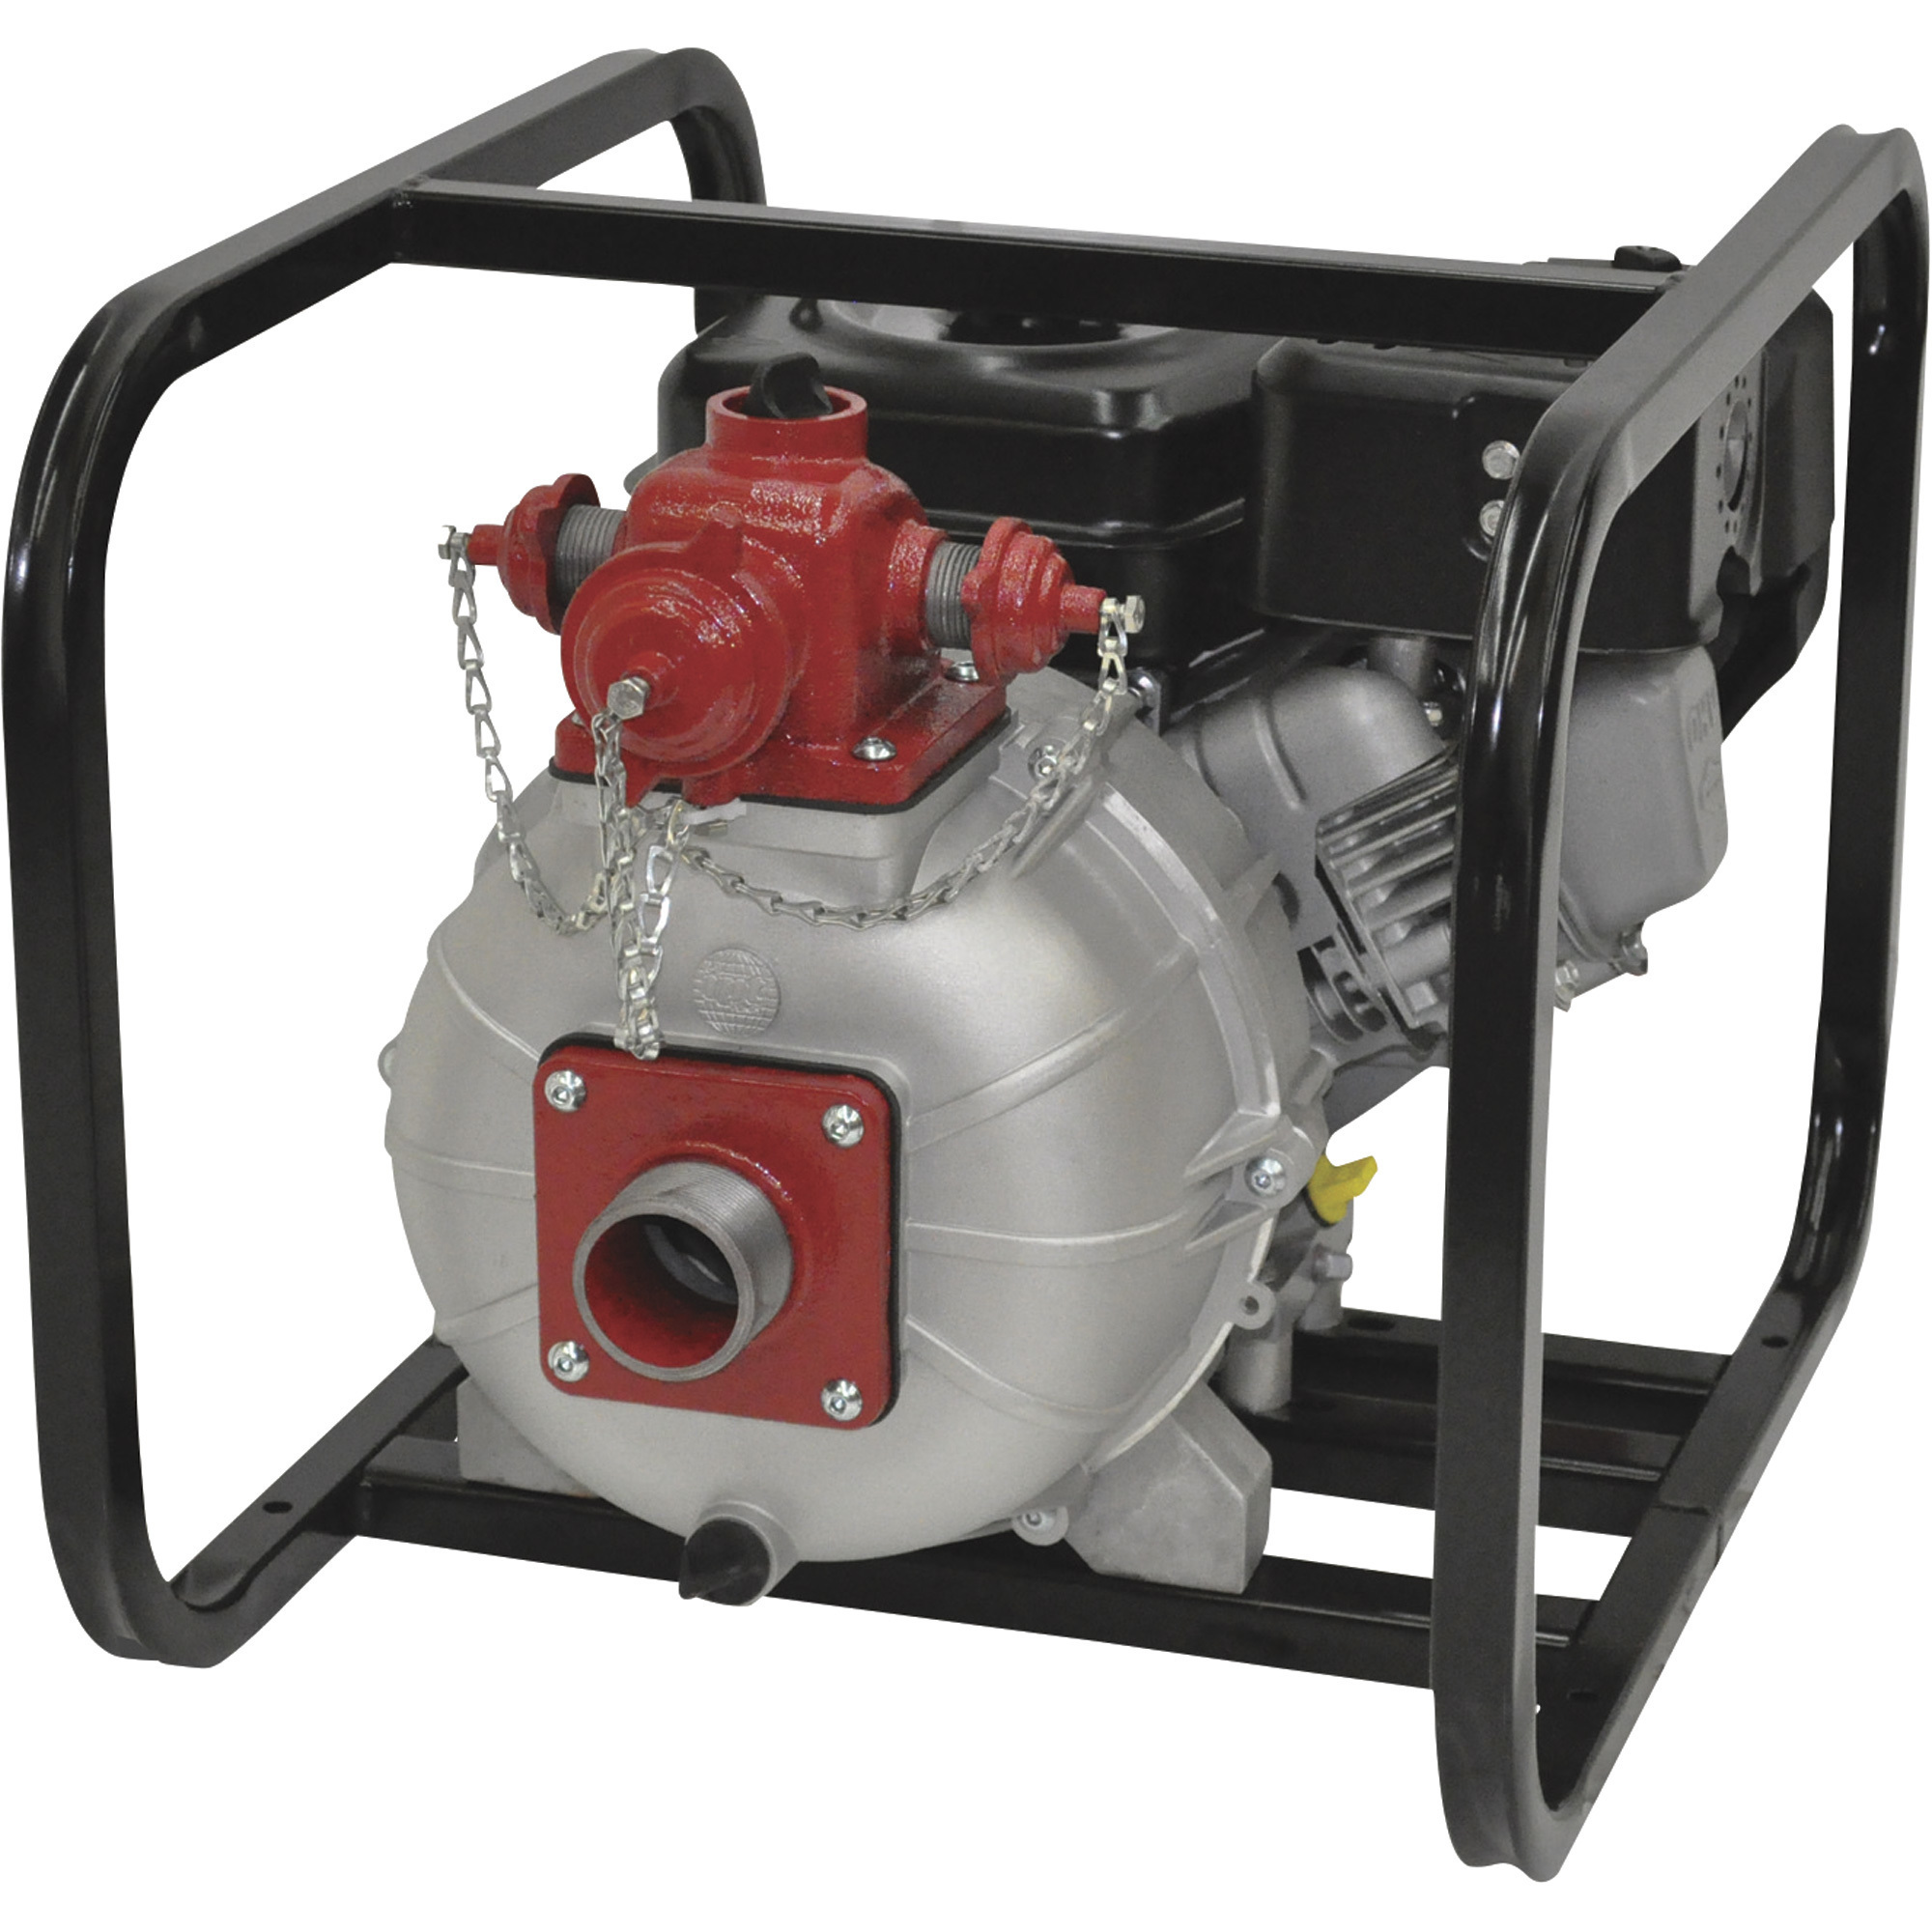 IPT Self-Priming Two-Stage High Pressure Water Pump â 4500 GPH, 110 PSI, 1 1/2Inch, 160cc Honda GX160 Engine, Model 2MP5HR